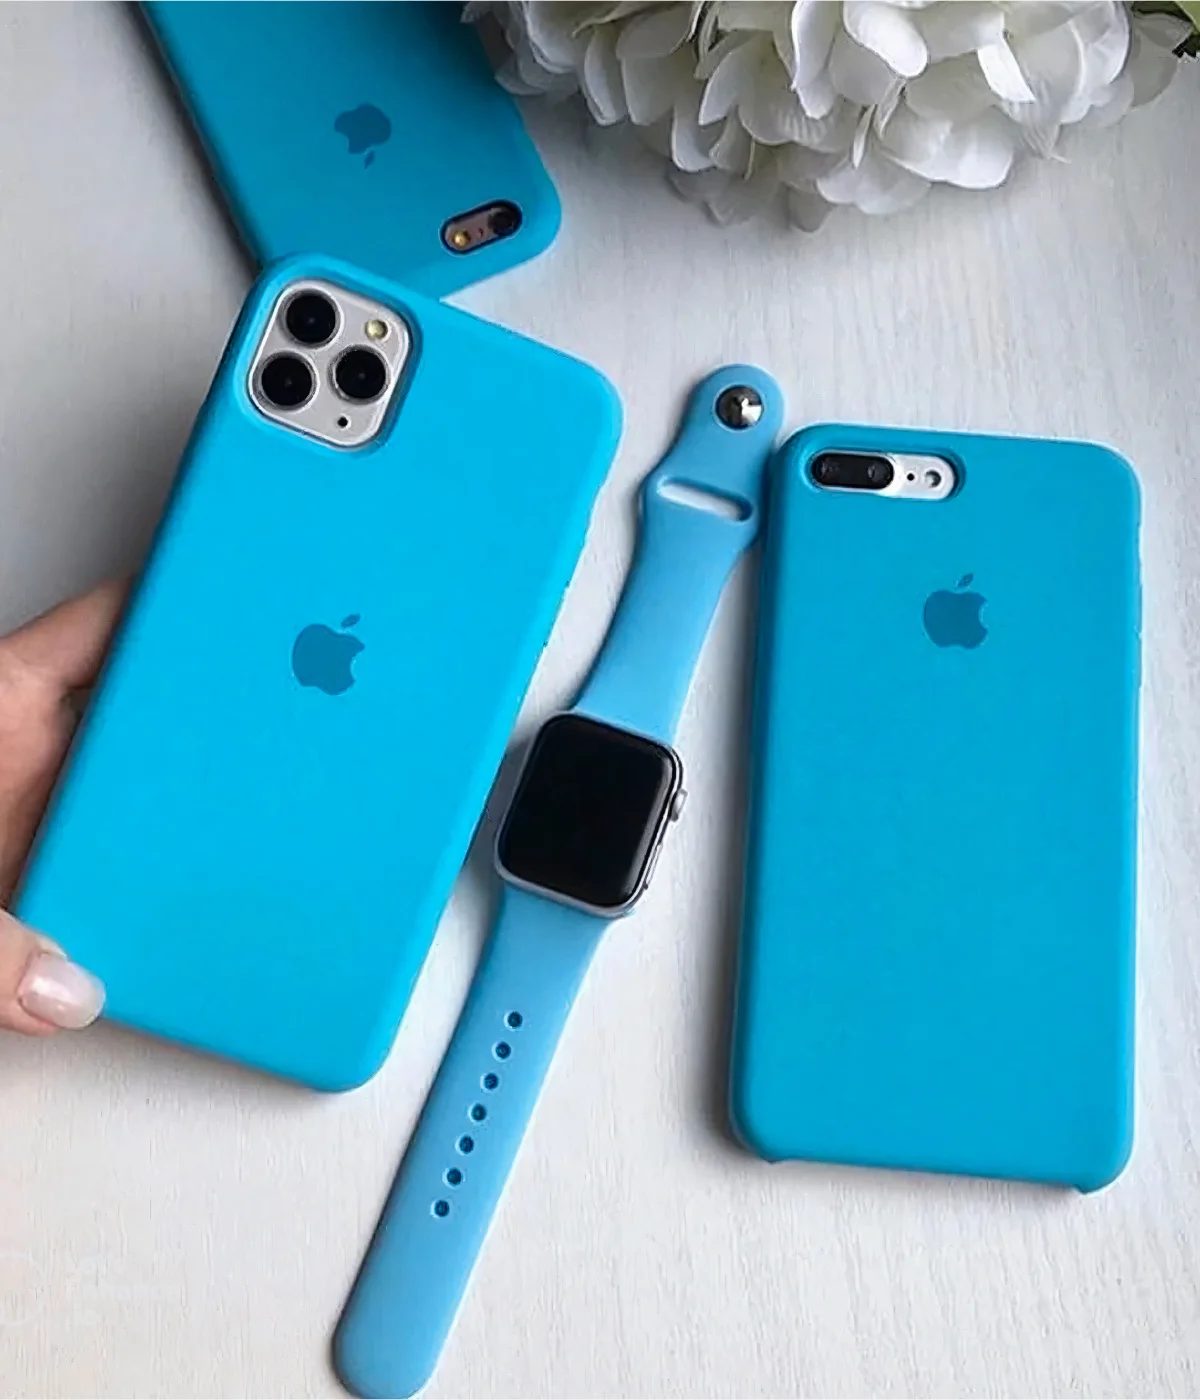 Iphone Liquid Silicone Case - Surf Blue